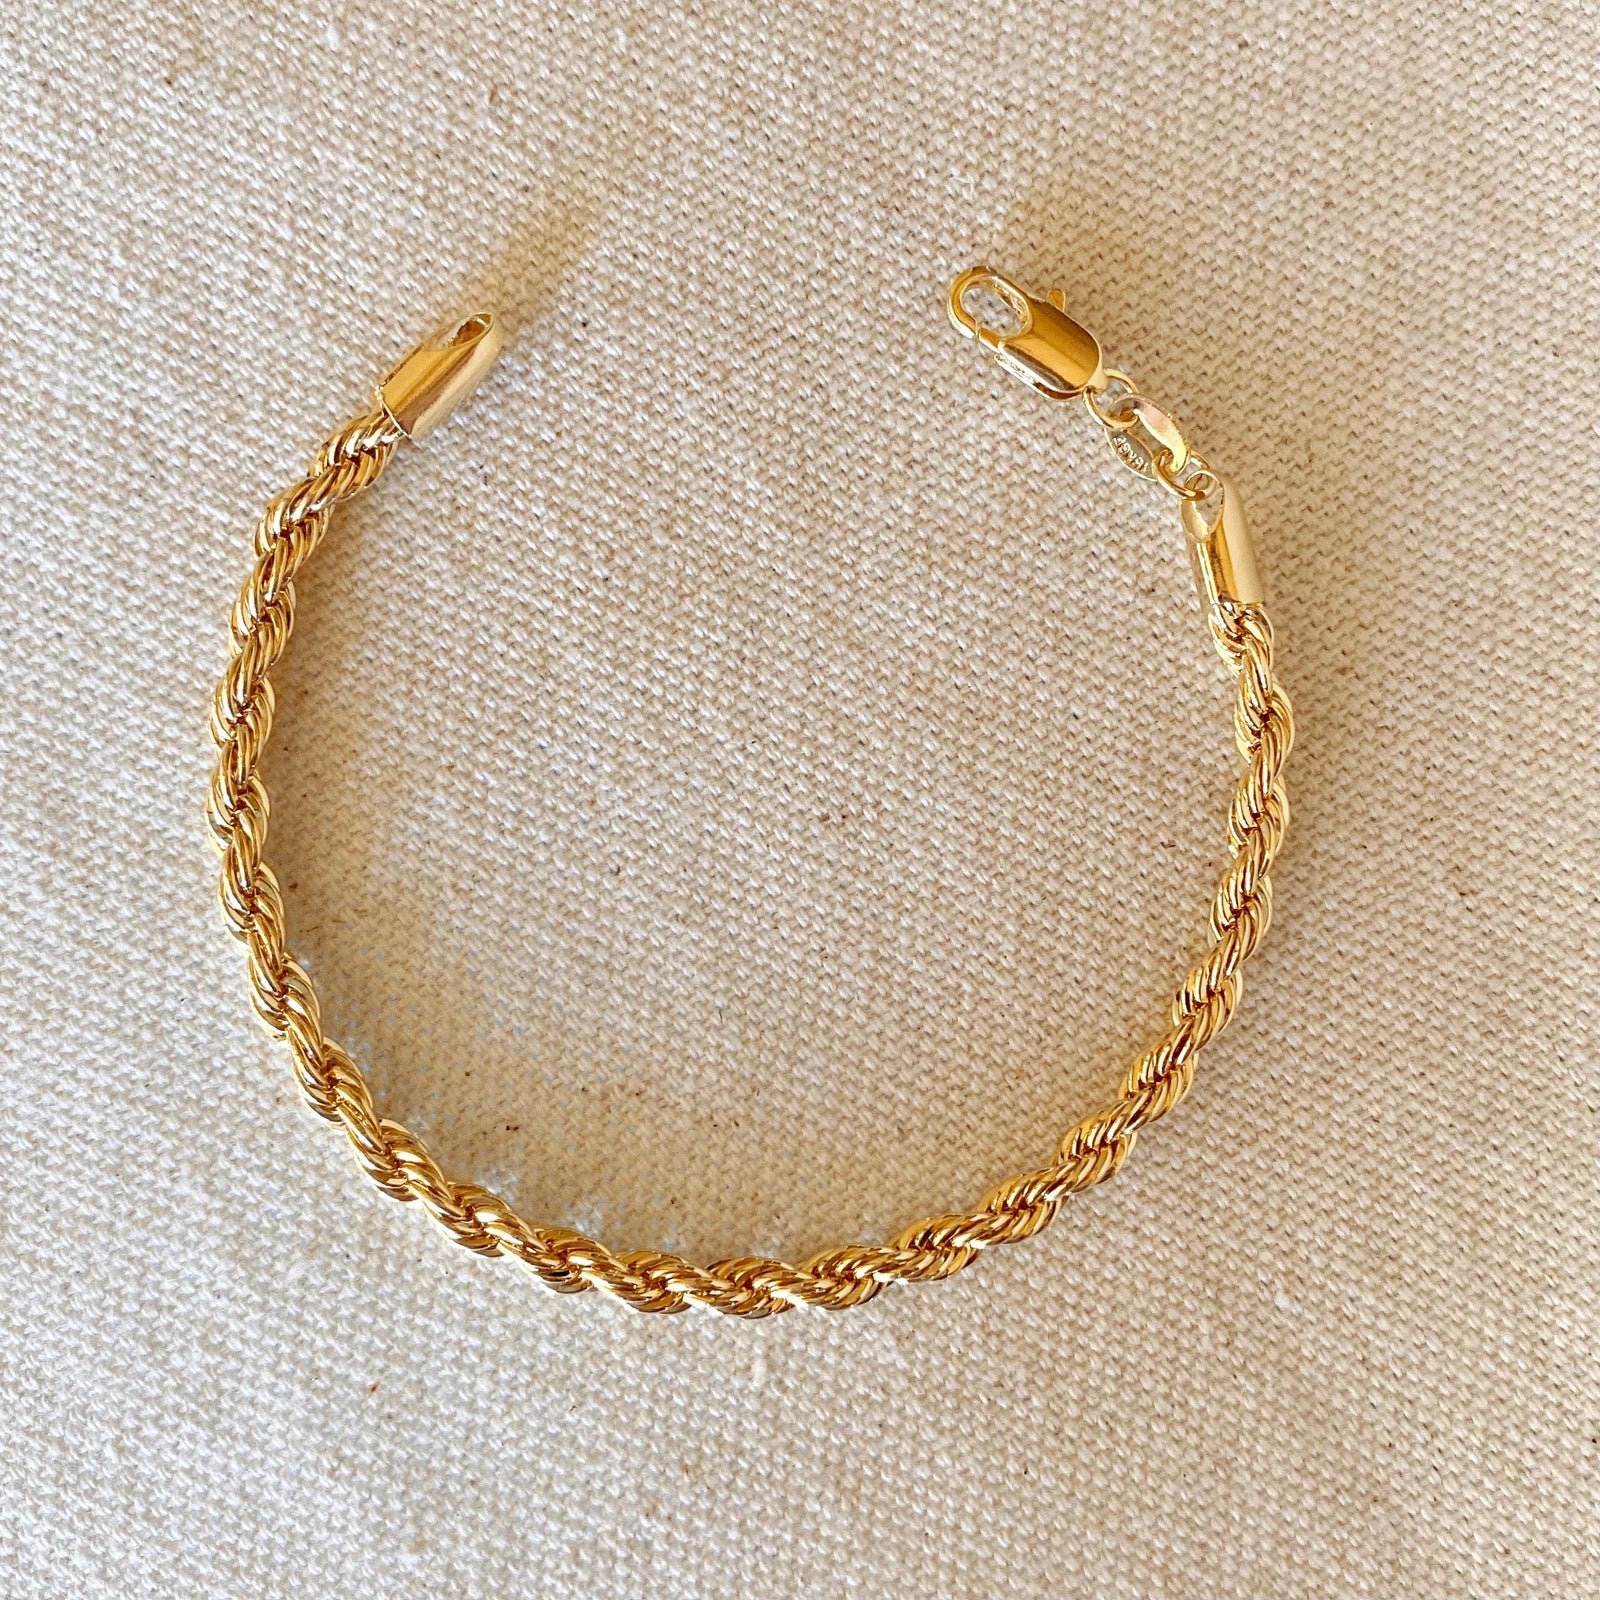 18k Gold Filled Rope Bracelet